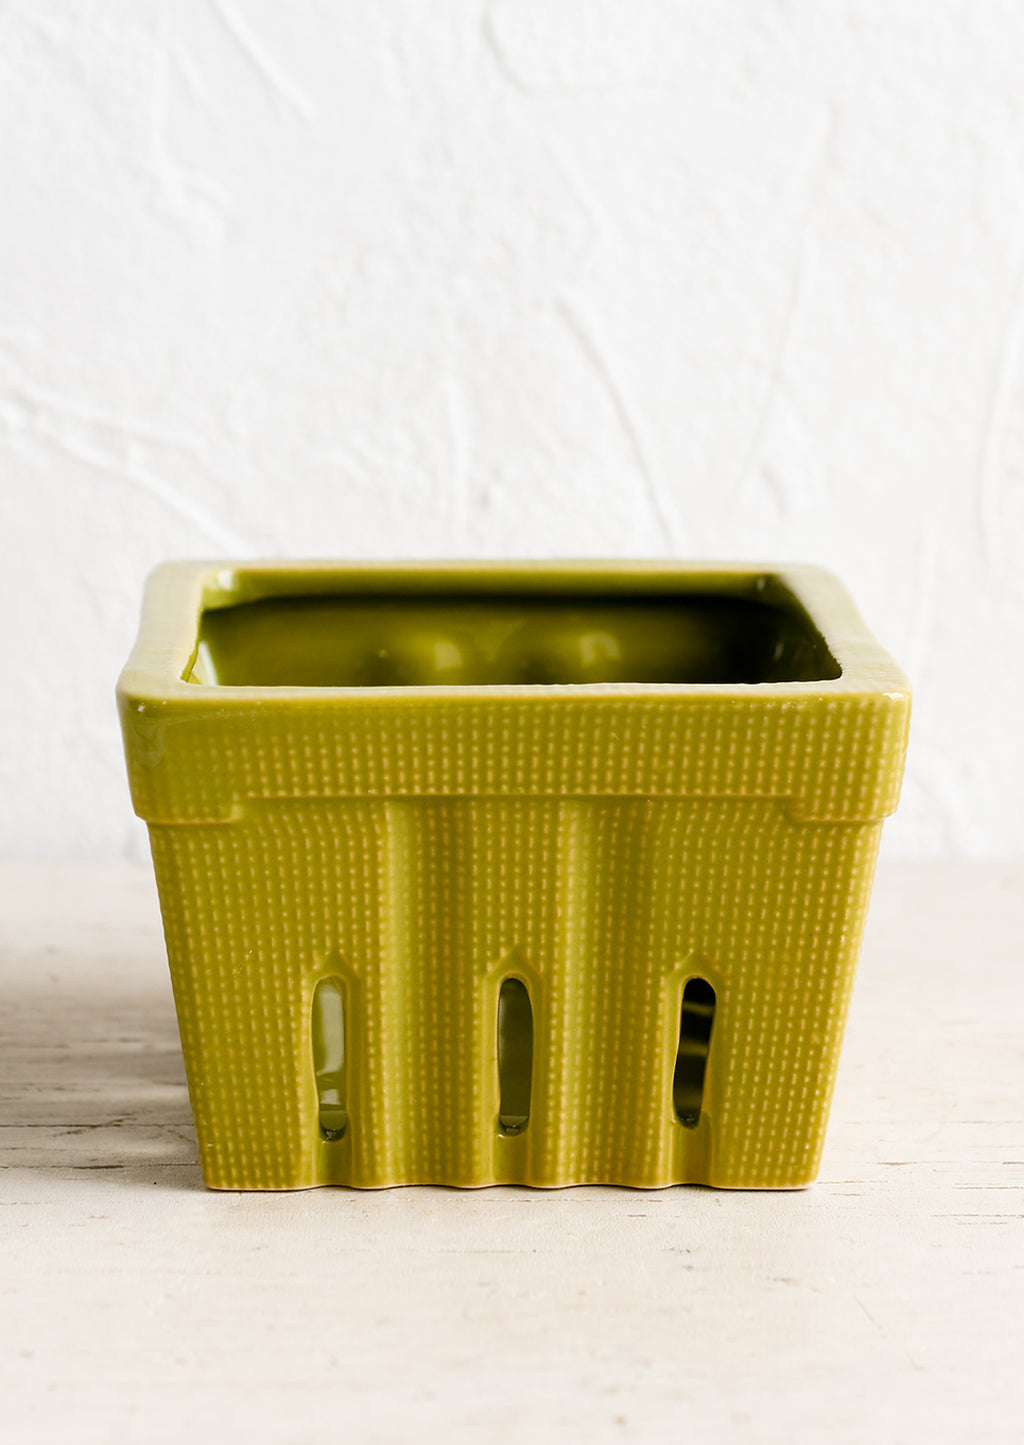 Moss Green: A ceramic berry basket in moss green.